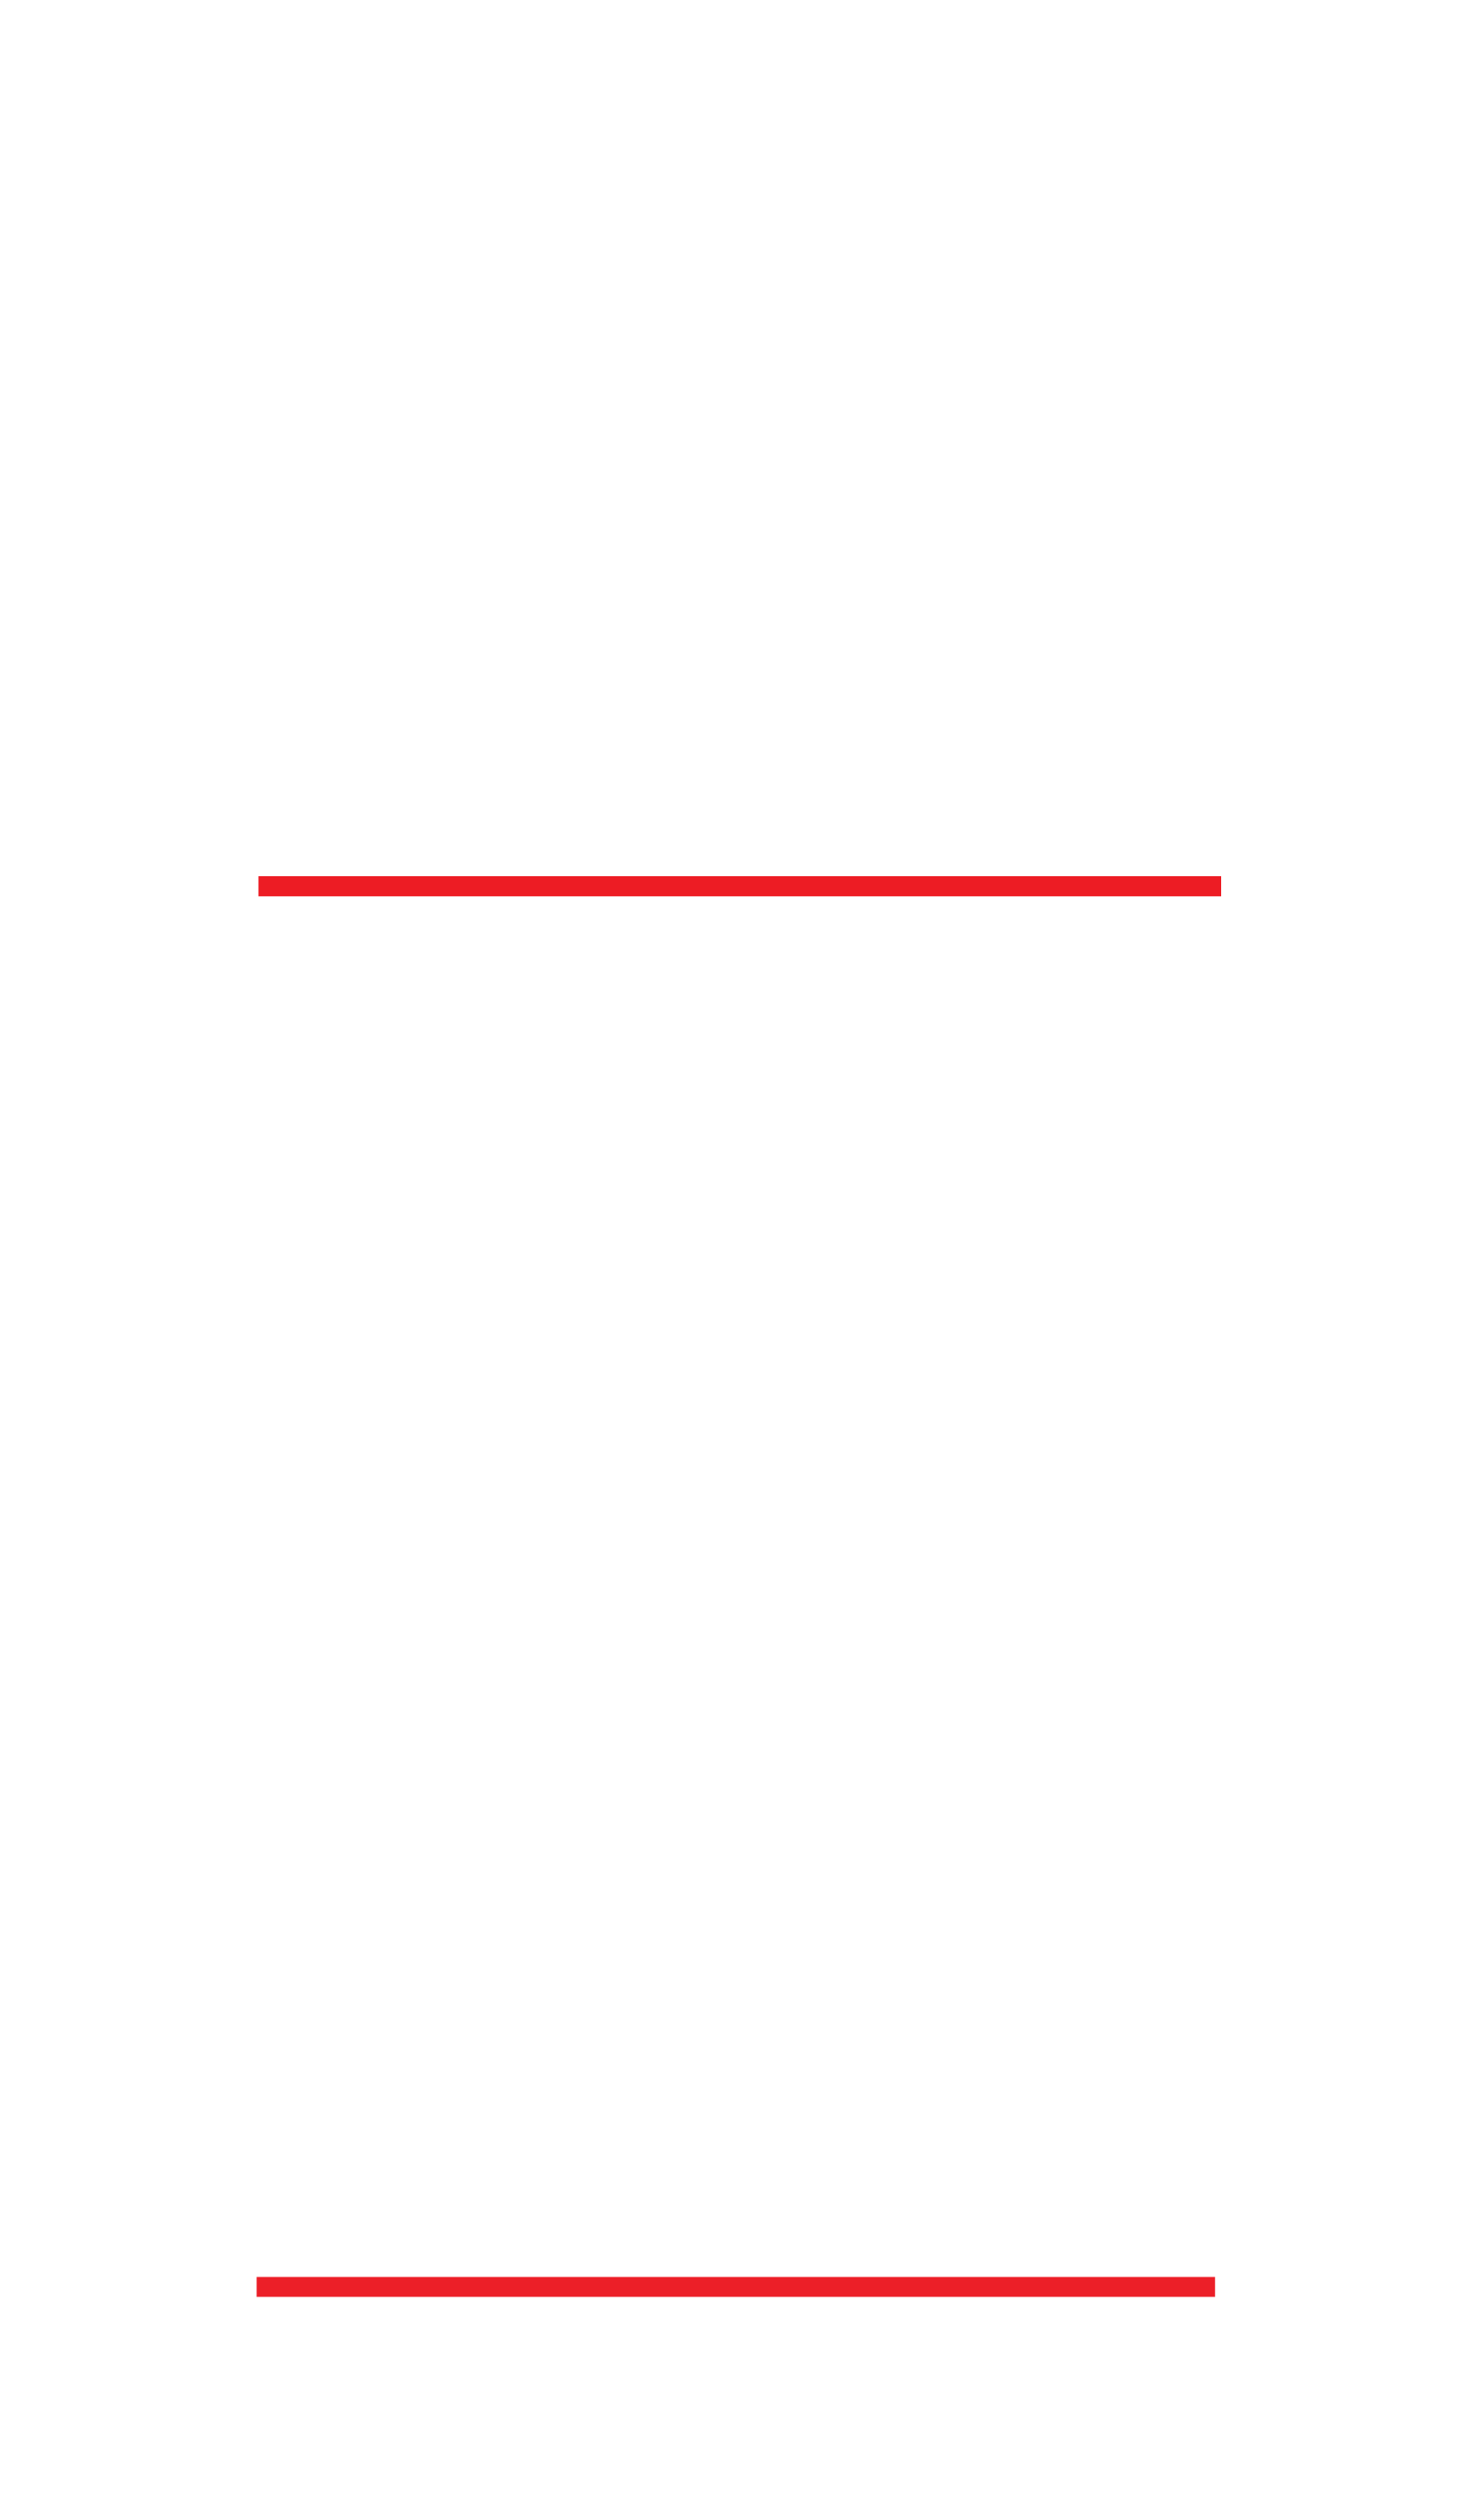 Hip Hop Fashion Month Profile: Dapper Dan - The Hip Hop Museum